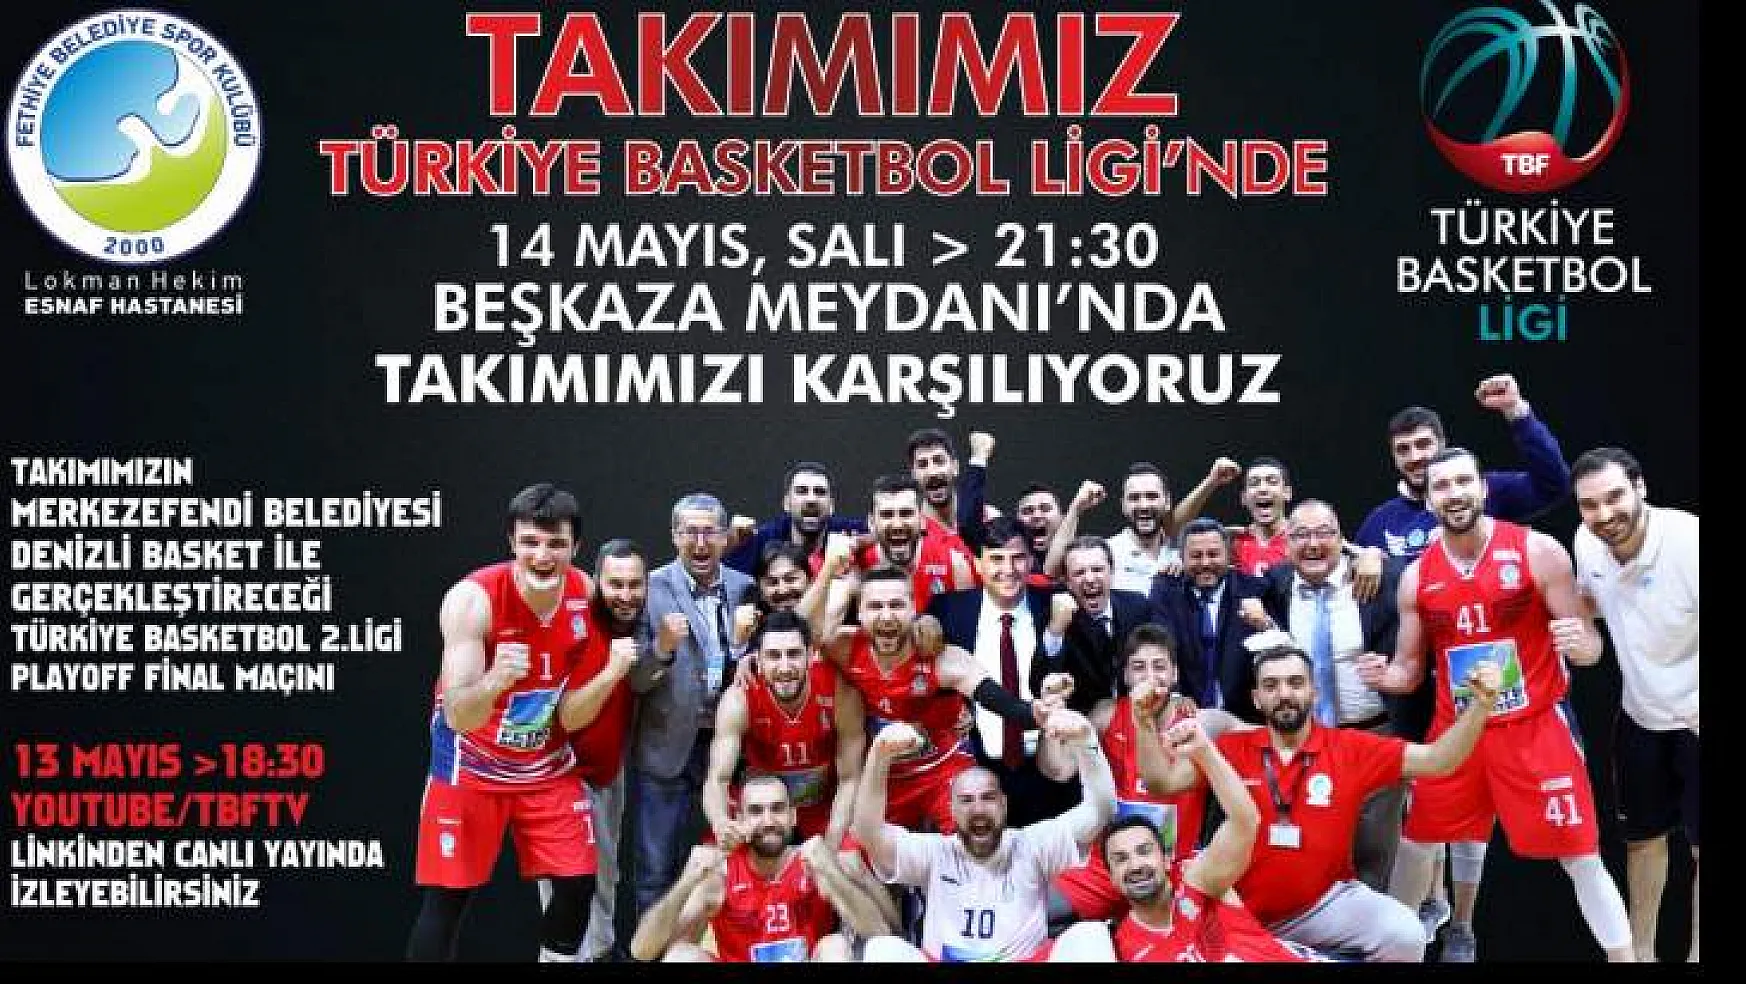 TBL'ye çıkan Belediyespor'u Beşkaza Meydanı'nda karşılıyoruz!